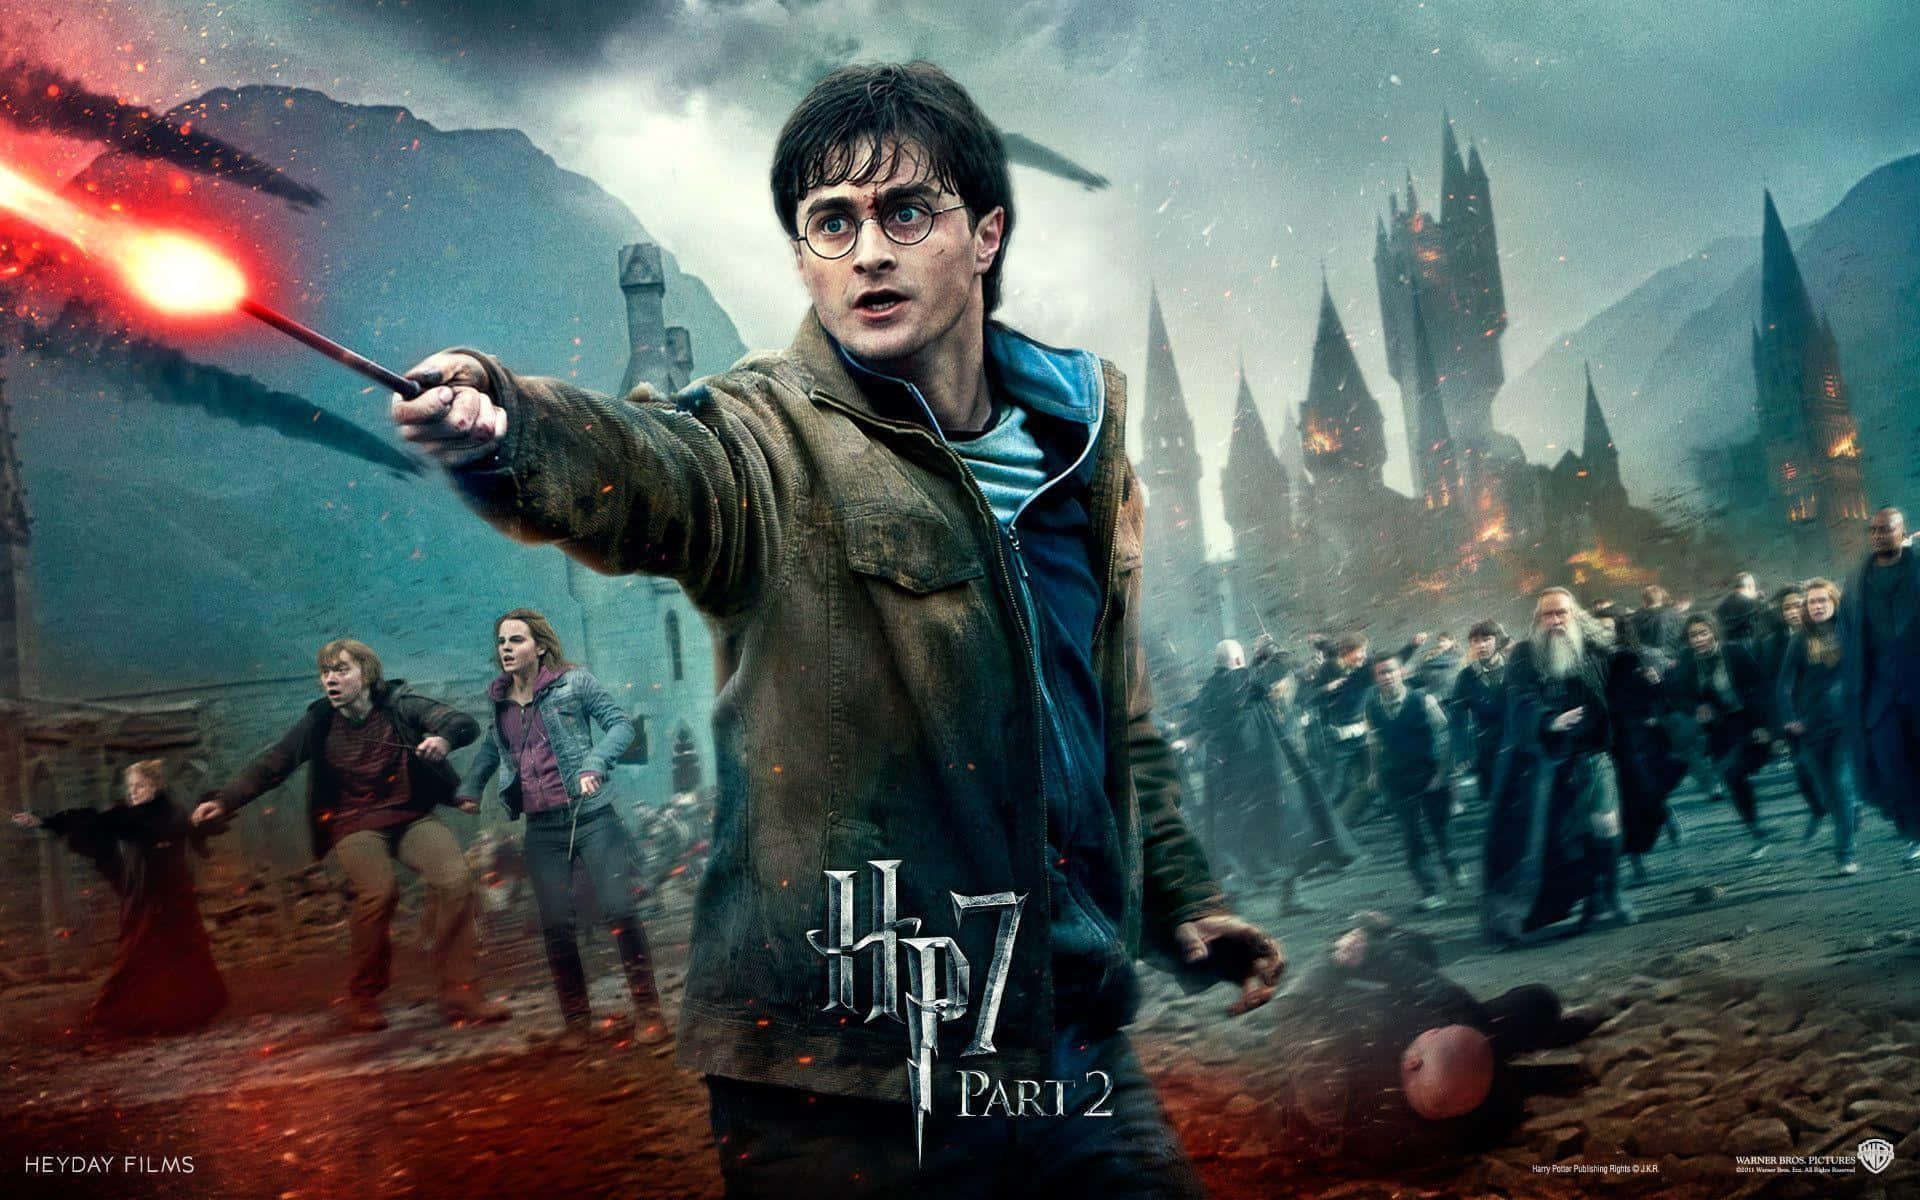 Diebesetzung Von Harry Potter | Beschreibung: Daniel Radcliffe, Rupert Grint, Emma Watson Und Weitere Prominente Gesichter Von Harry Potter Wallpaper